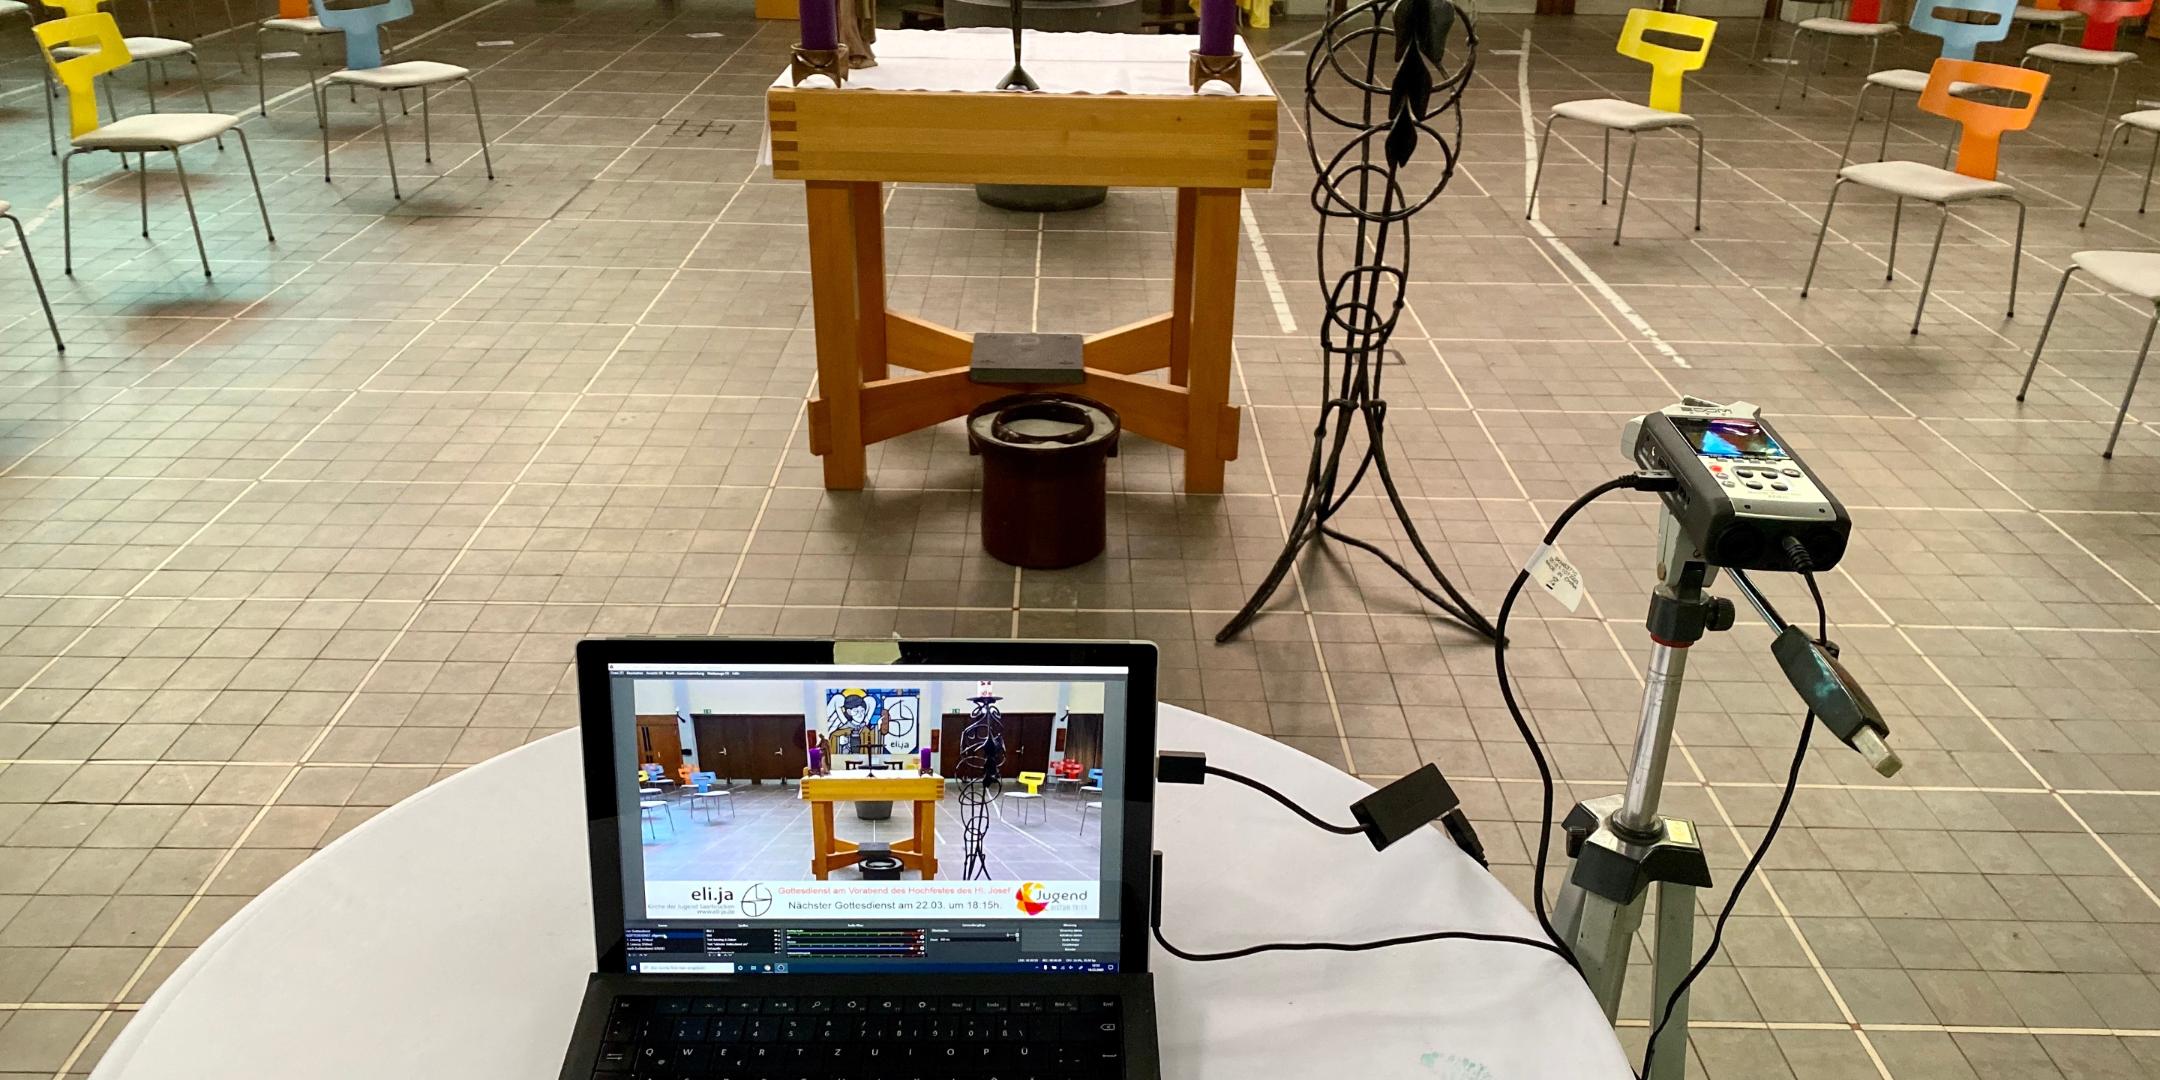 So sieht das Setup für die Übertragung der Gottesdienste in der Kirche der Jugend eli.ja aus. (Foto: Niclas Michely)